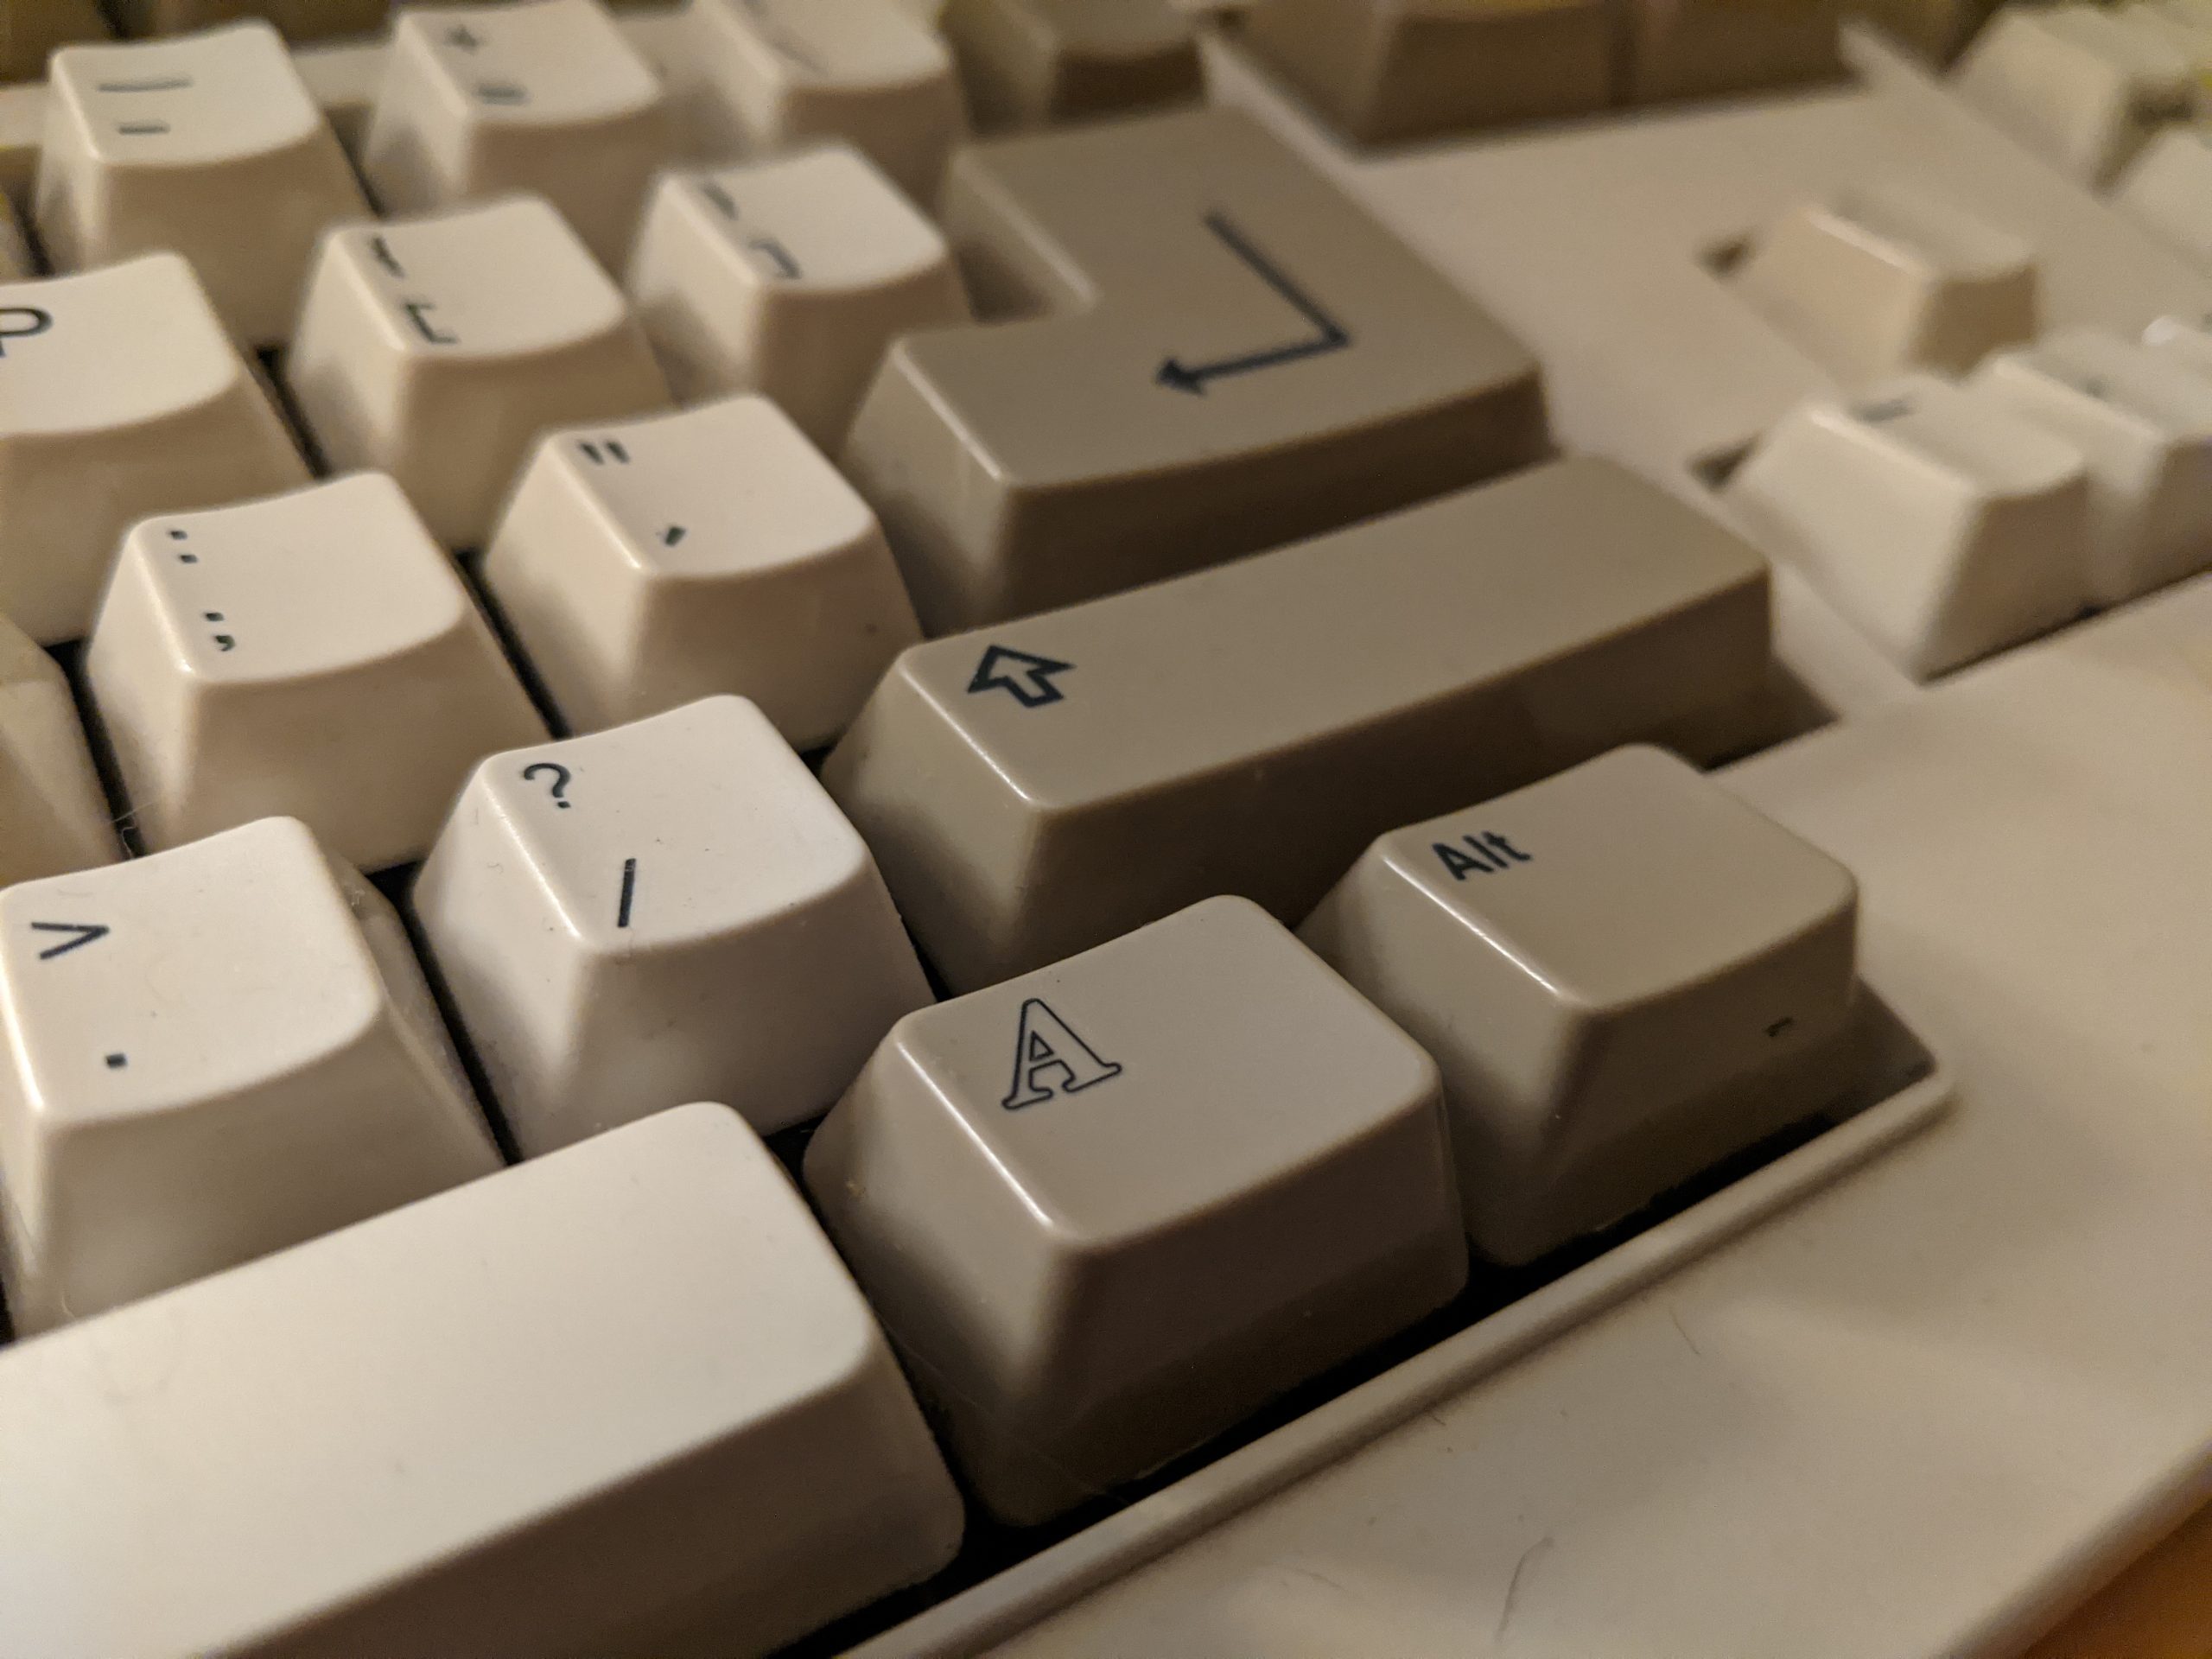 The "amiga key" on a yellowed Amiga keyboard